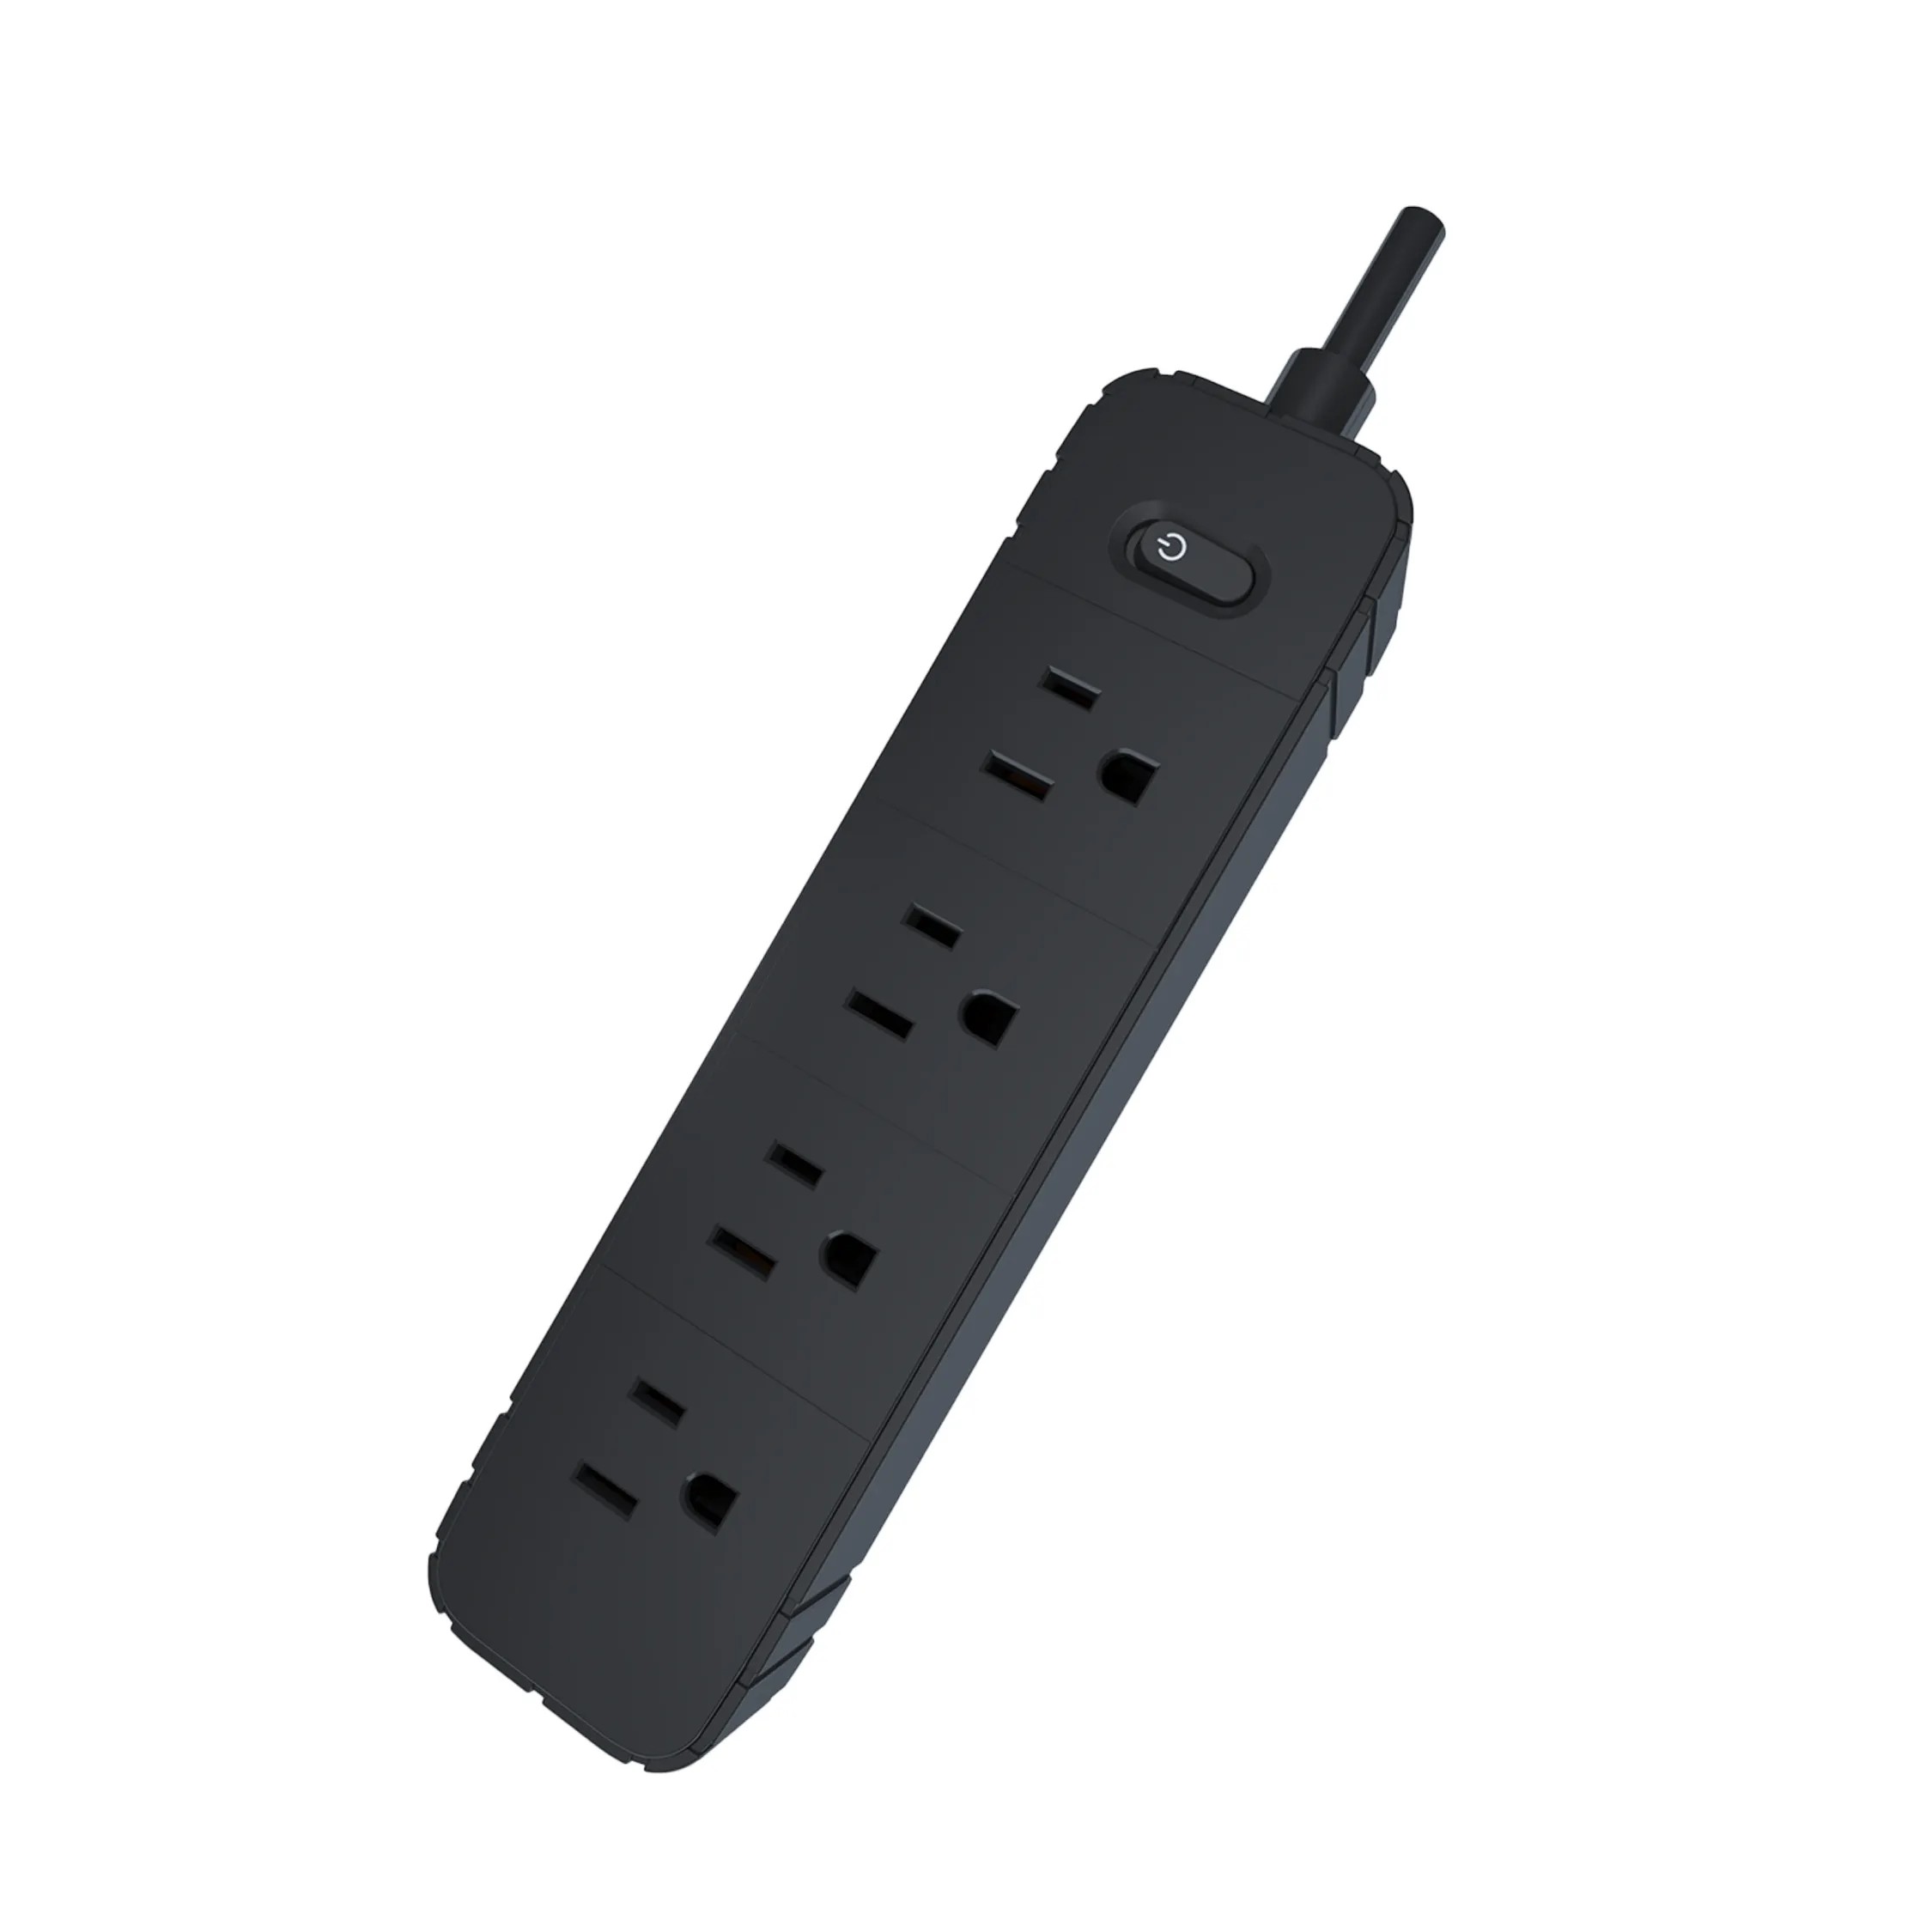 4 vie per USA ciabatte standard senza prolunga USB con 1.5m 2m 3m 4m 5m lunghezza cavo presa di estensione elettrica